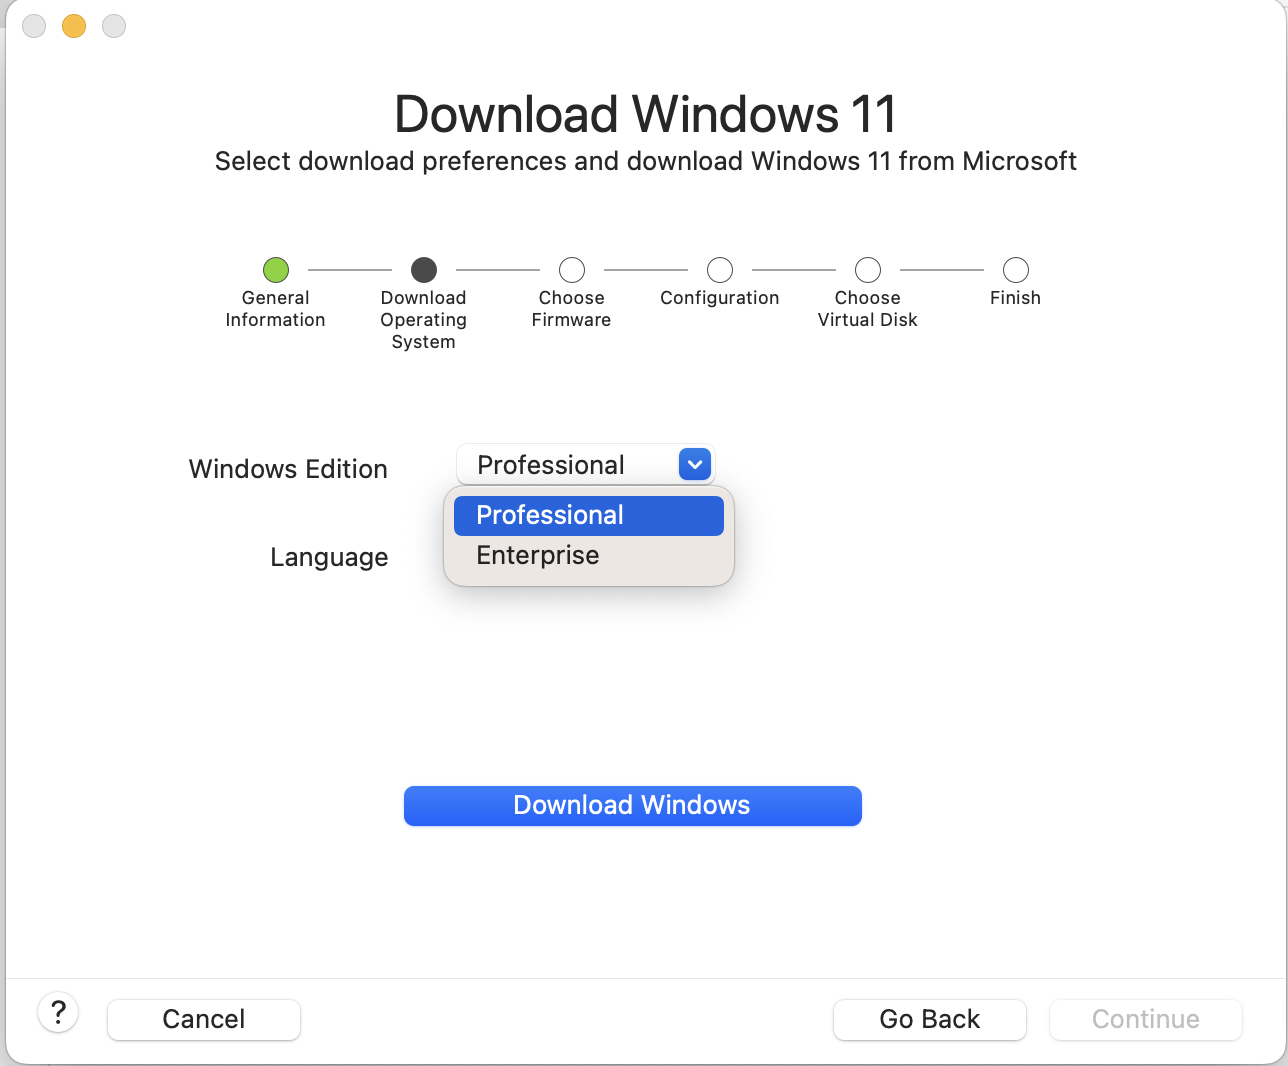 该屏幕截图显示用于选择首选 Windows 版本的字段。